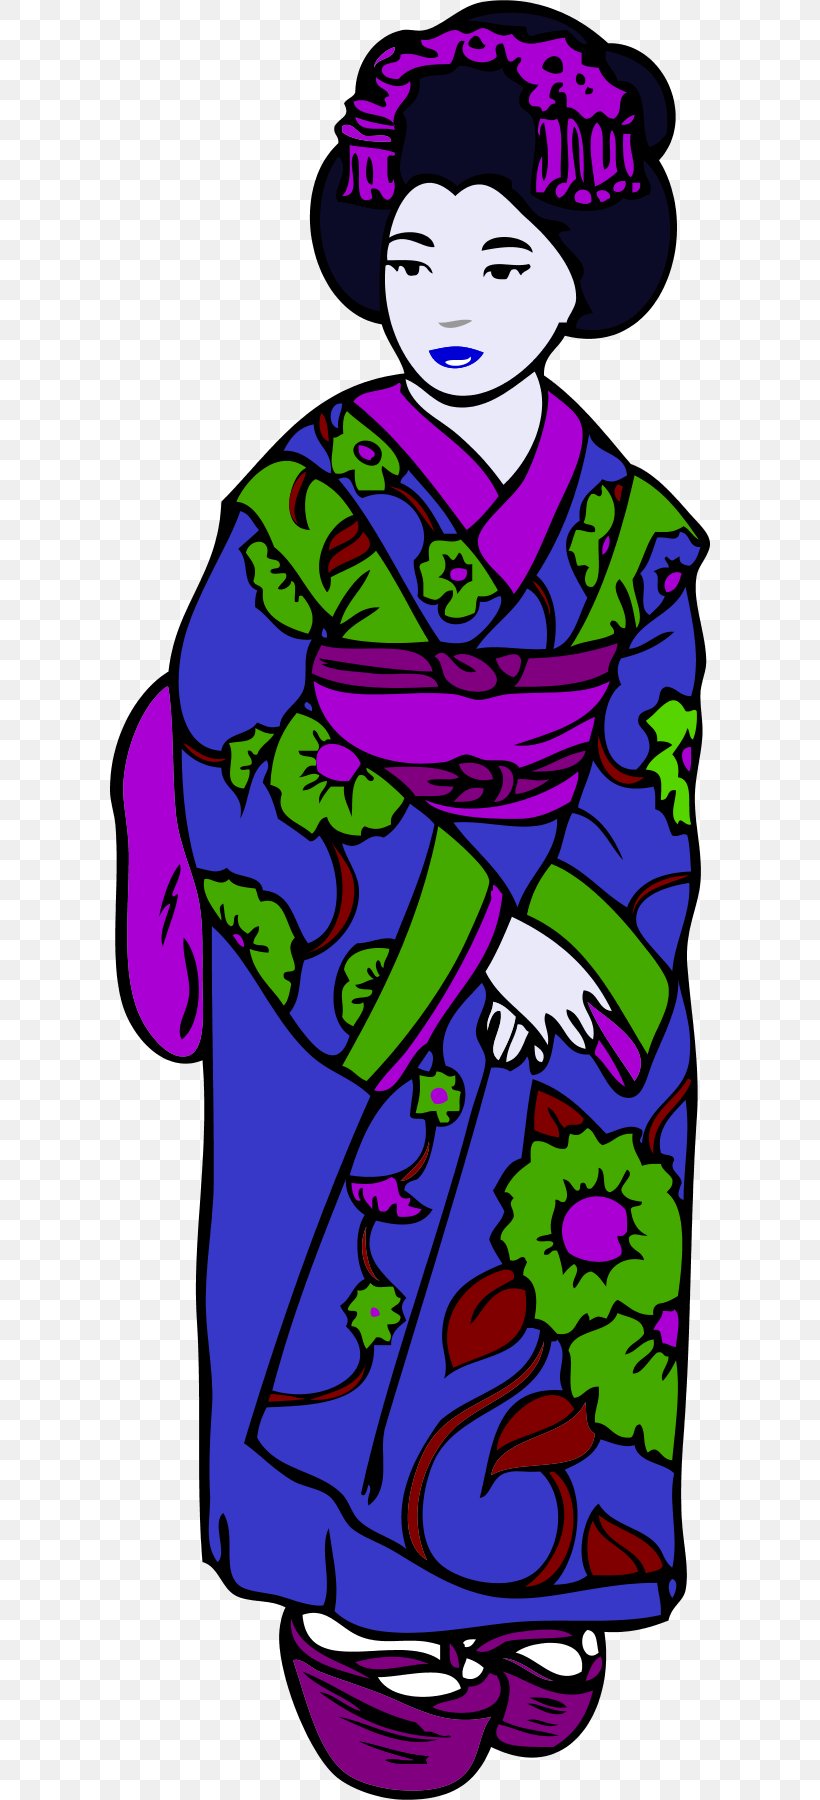 Kimono Woman Free Content Clip Art, PNG, 600x1800px, Kimono, Art, Artwork, Clothing, Dress Download Free